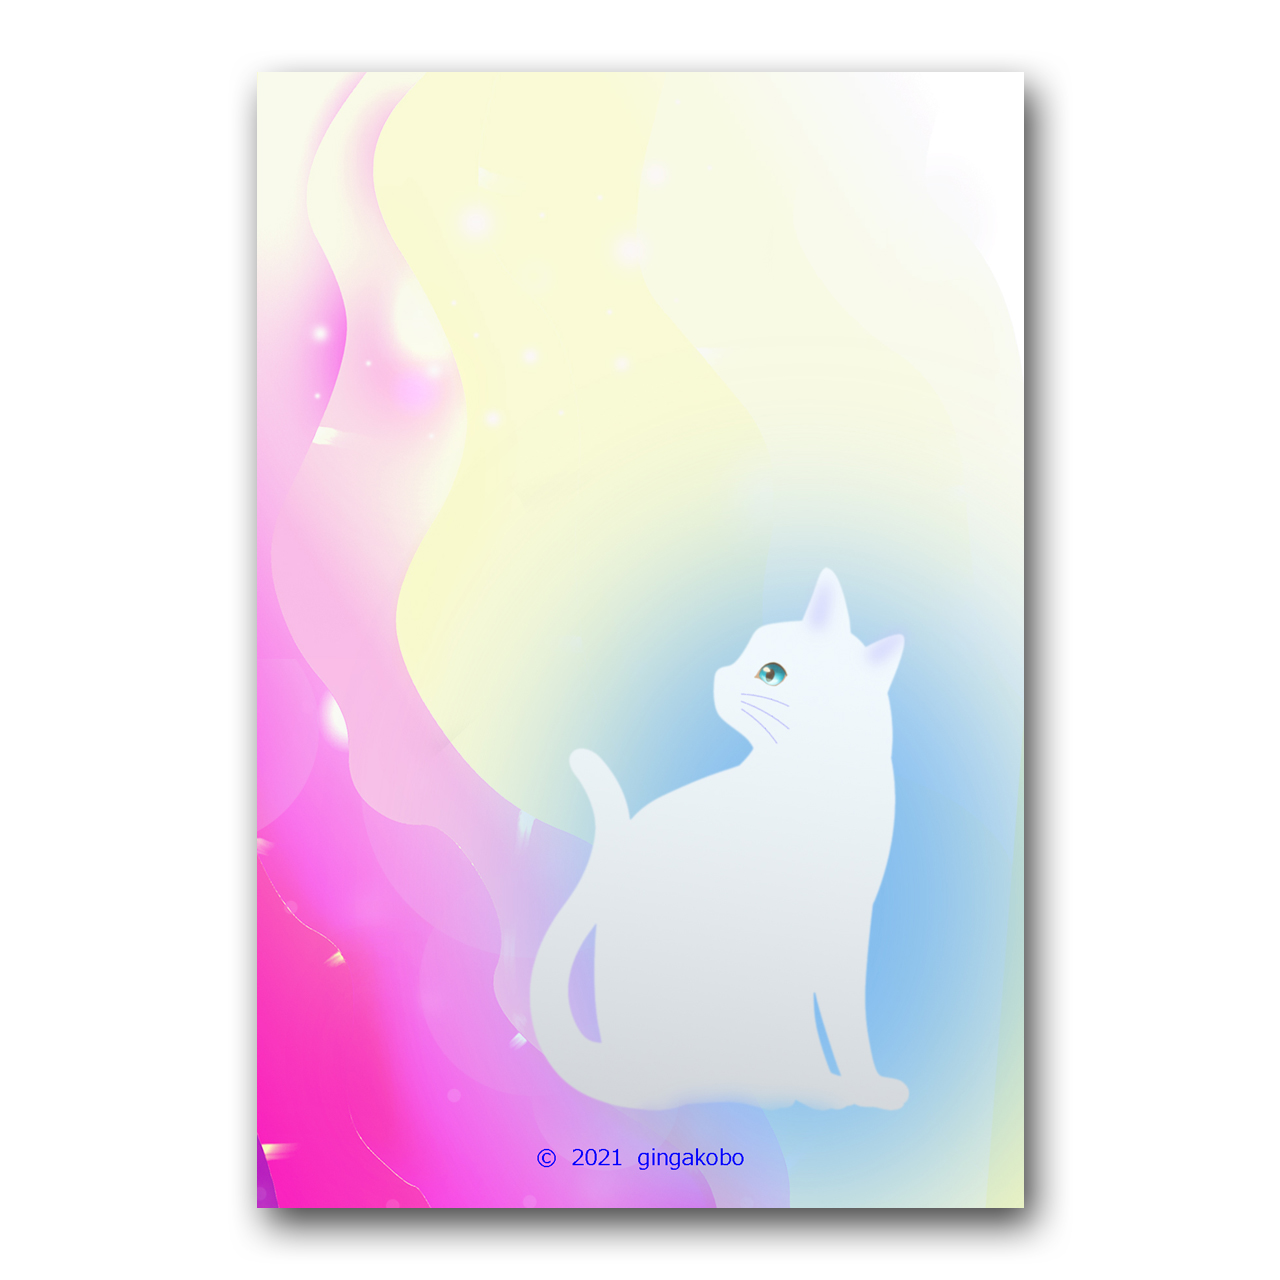 瞳のつぶやき 猫 白猫 ほっこり癒しのイラストポストカード2枚組no 1392 Iichi ハンドメイド クラフト作品 手仕事品の通販